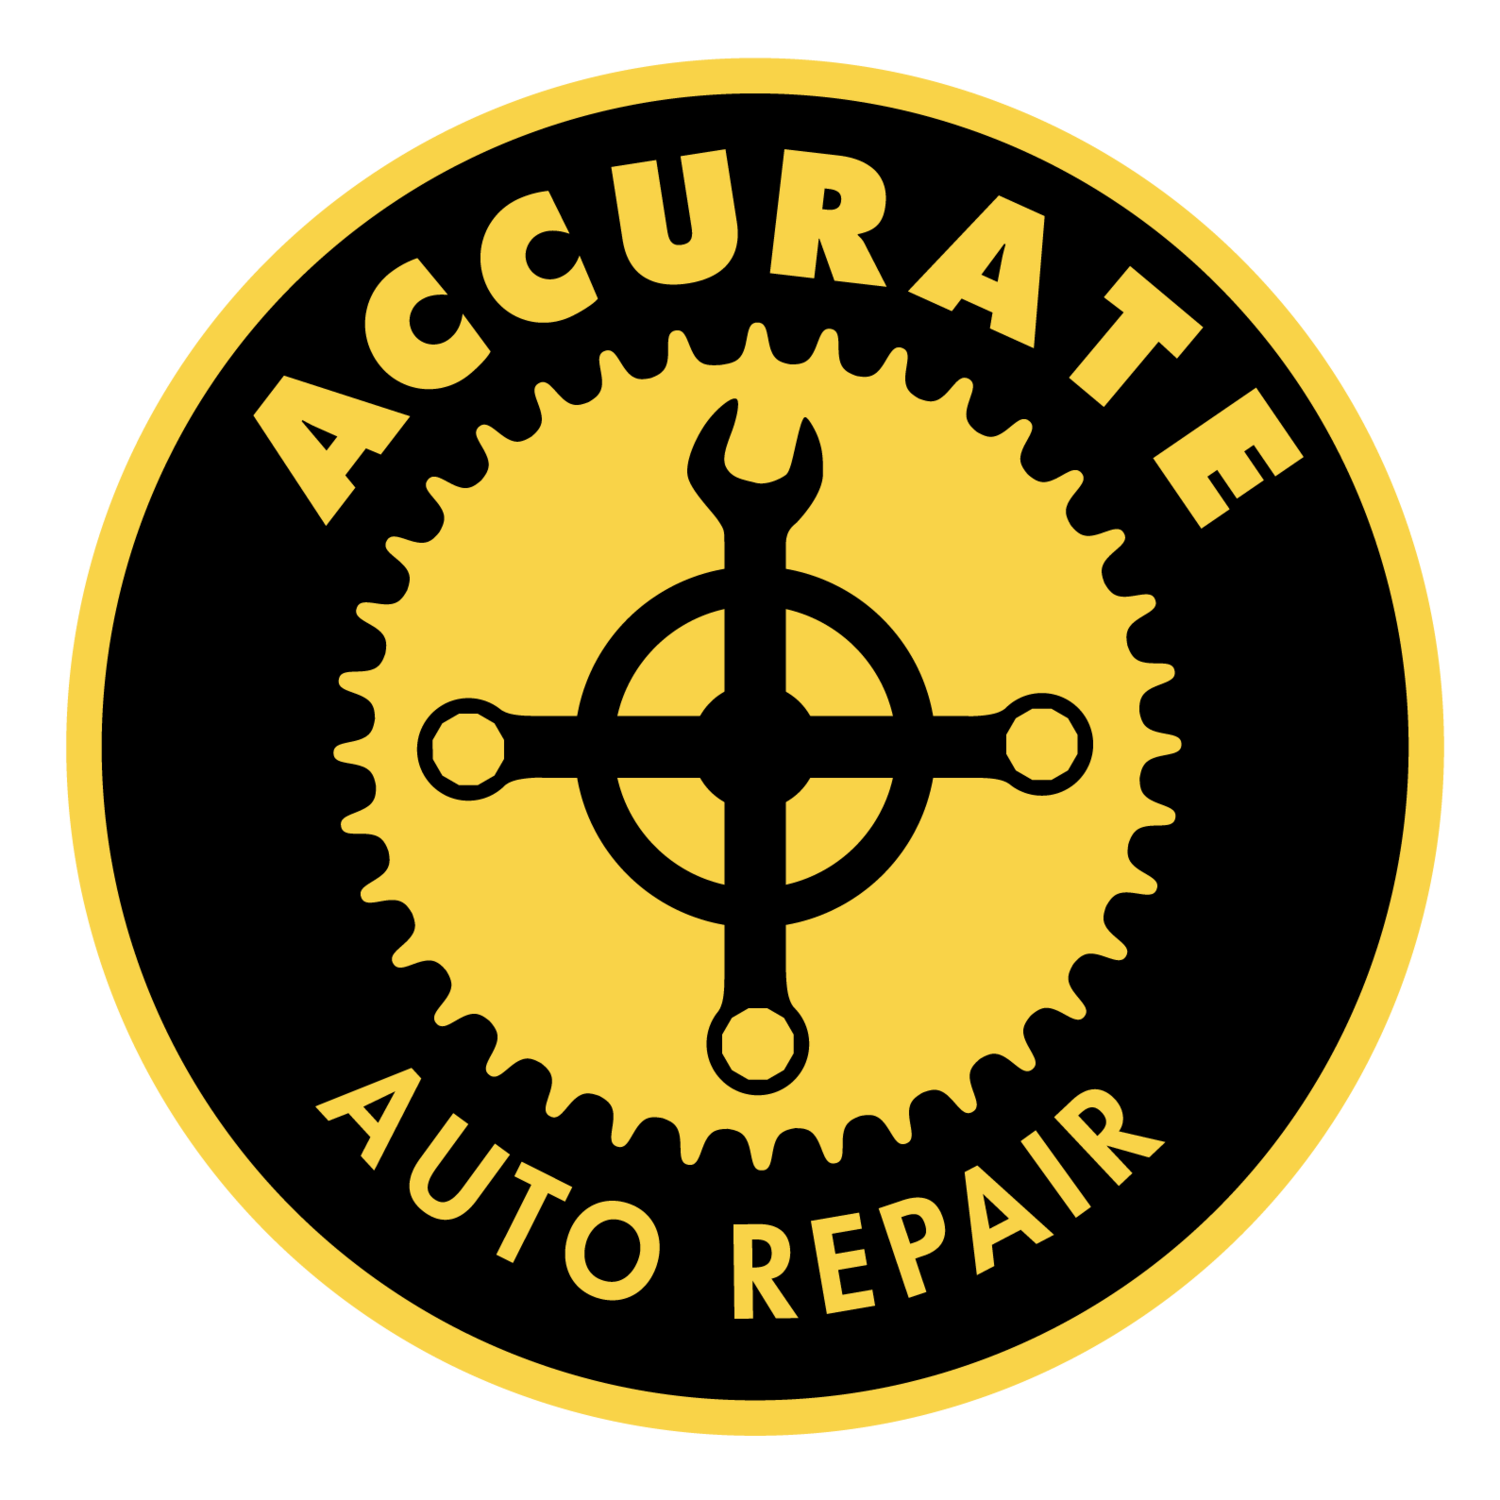 Accurate Auto Repair